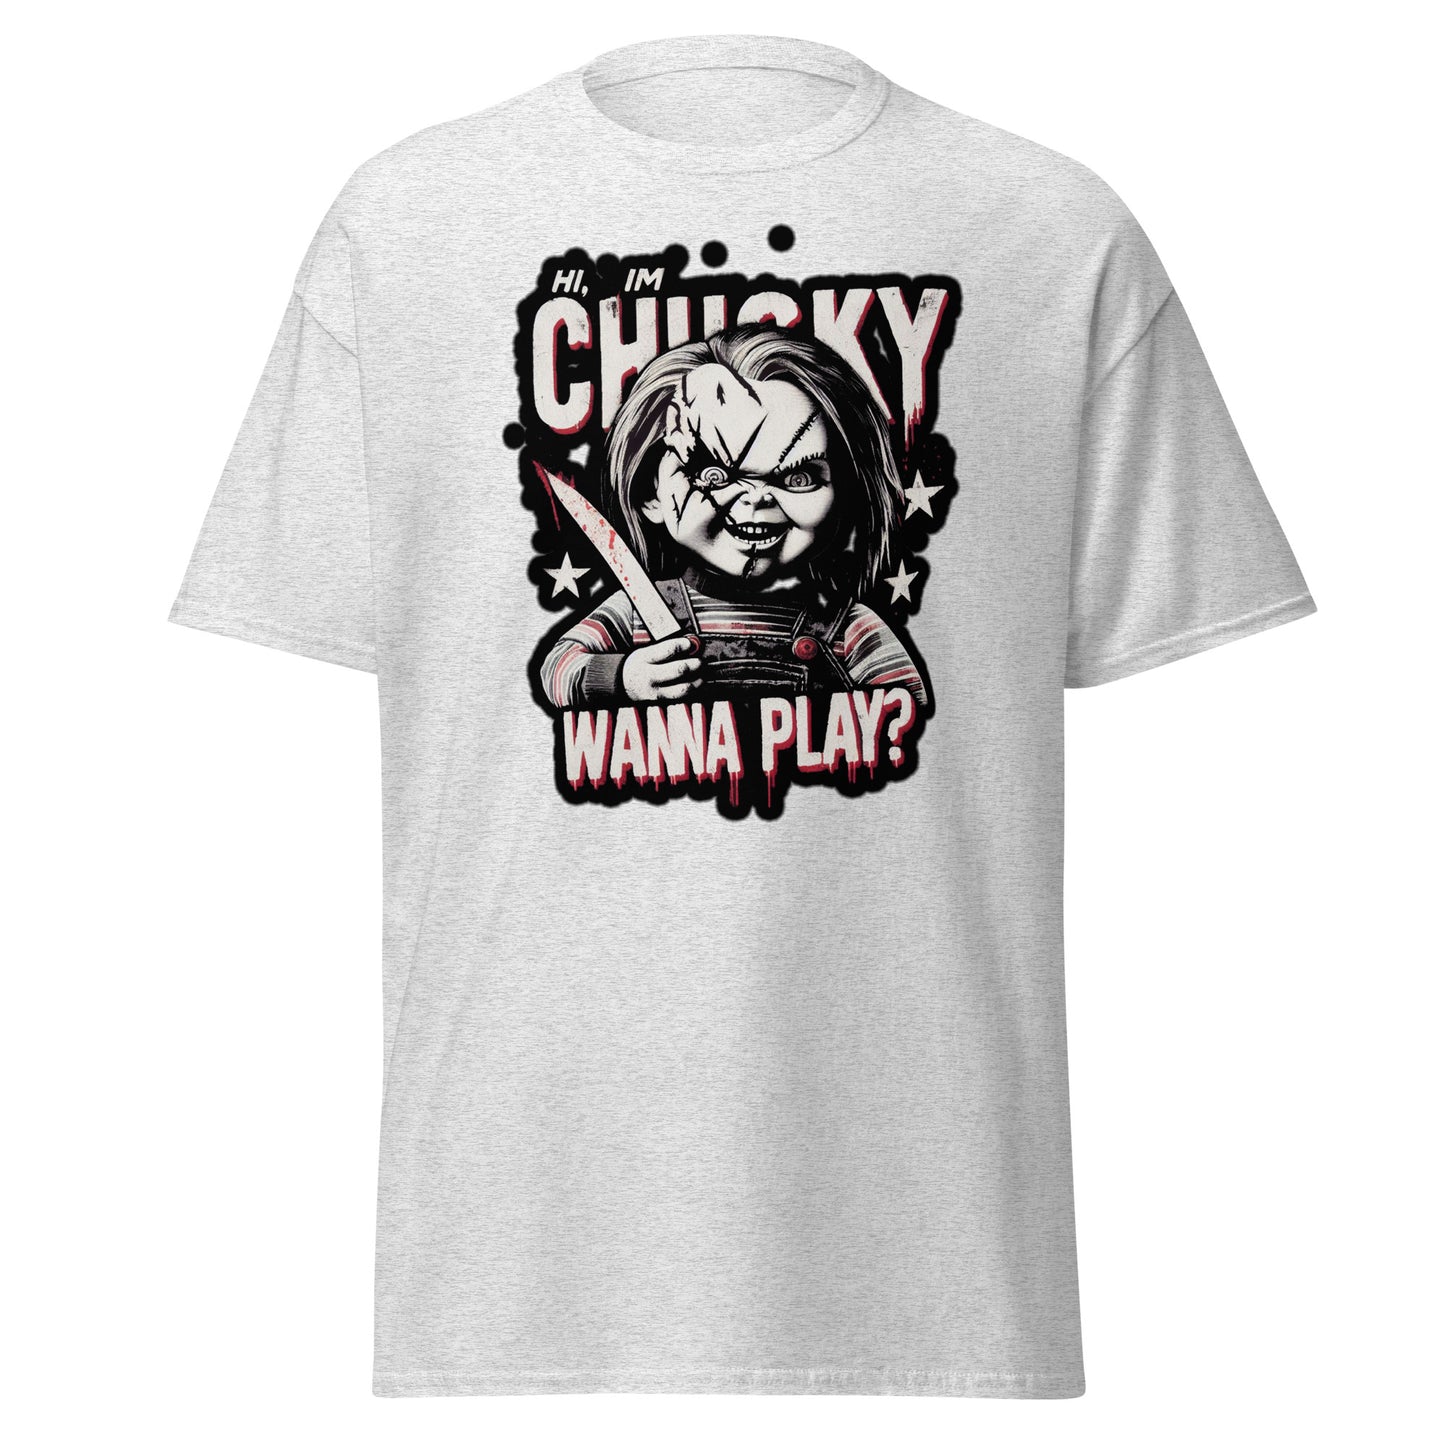 Chucky Childs play tshirt